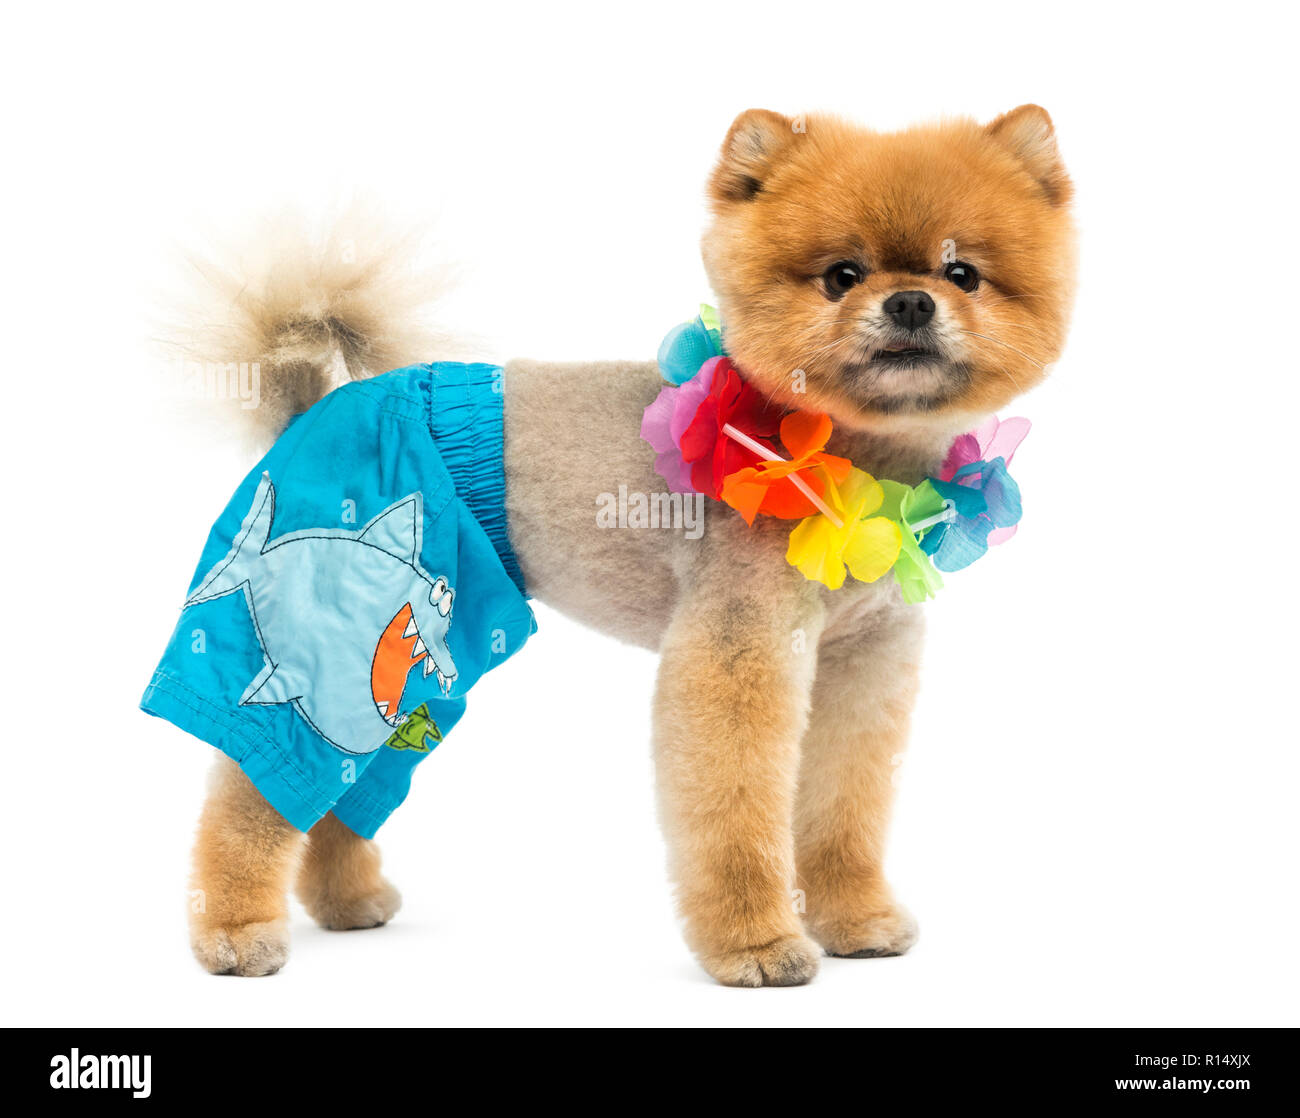 Groomed Pomeranian dog wearing shorts and a Hawaiian lei Stock Photo